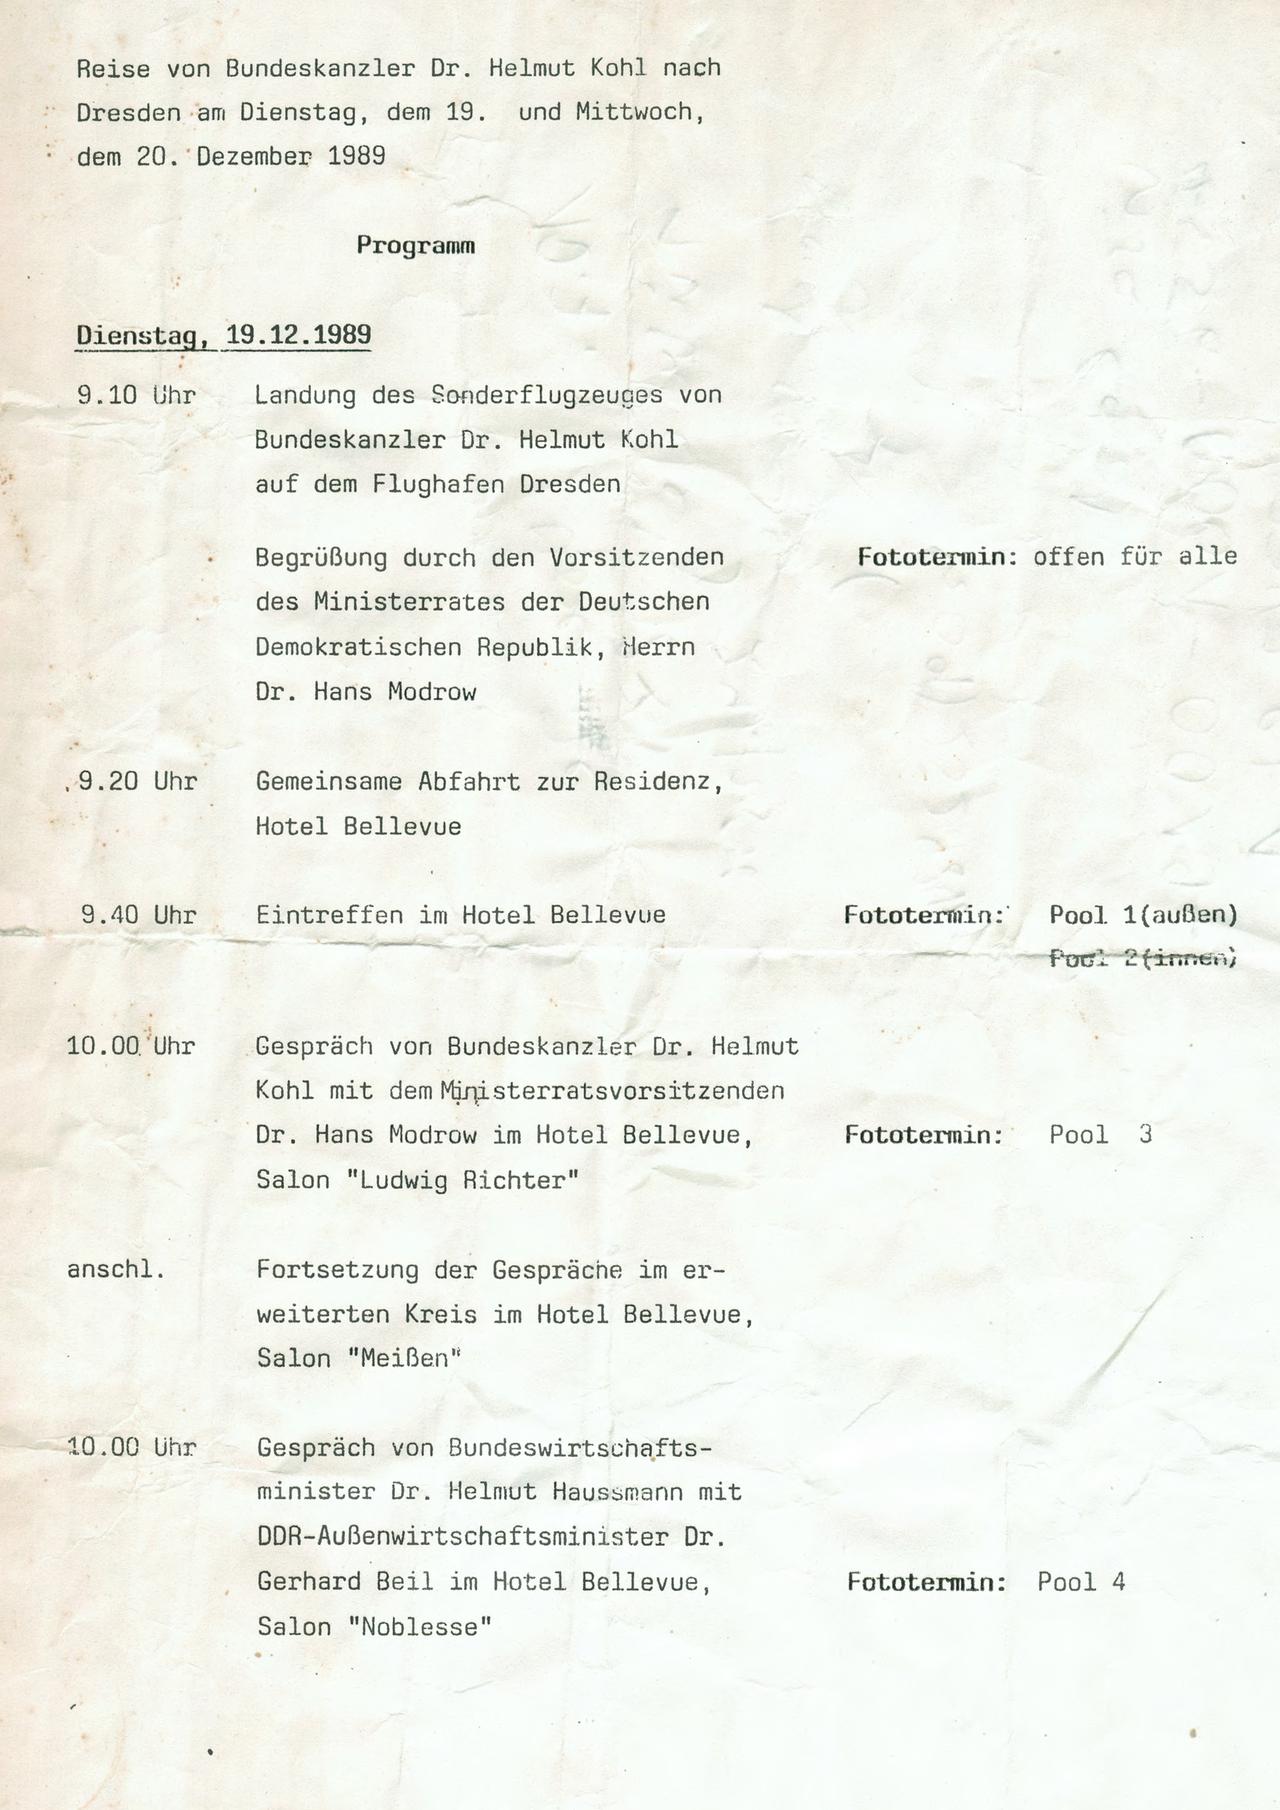 Programm der Reise des damaligen Bundeskanzlers Helmut Kohl nach Dresden am 19. und 20. Dezember 1989